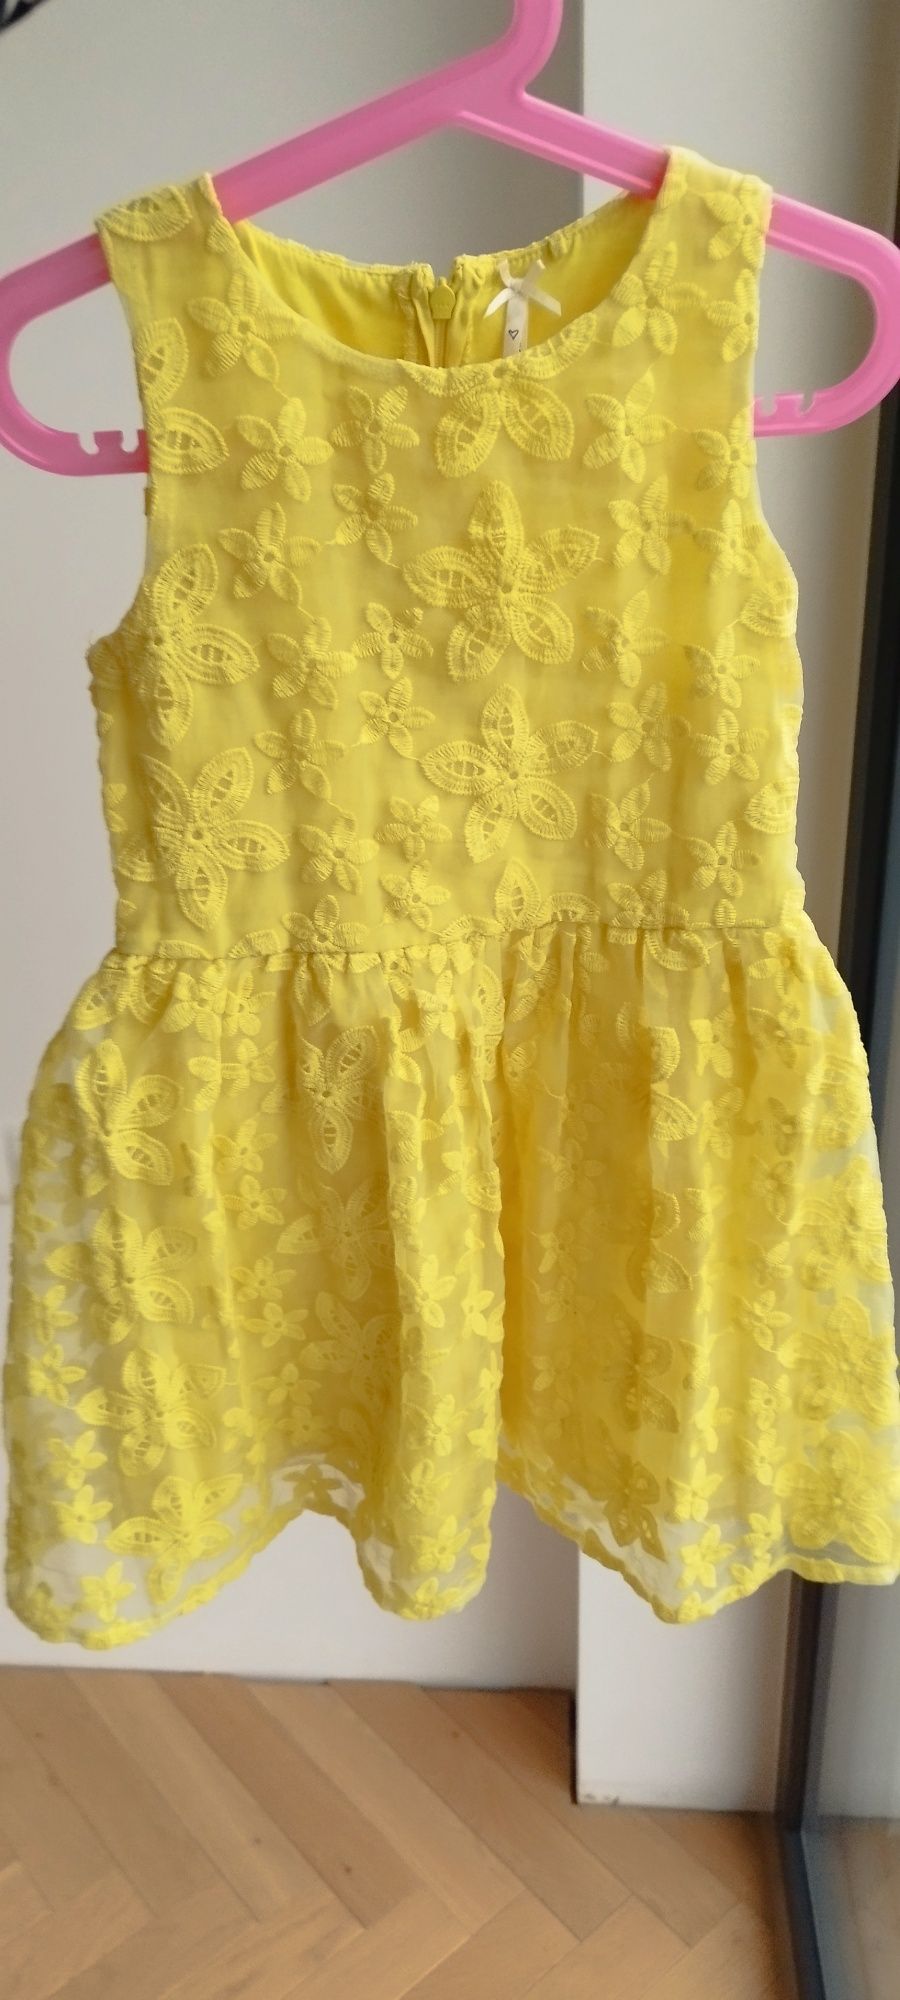 Sukienka koronkowa w kwiaty żółta wizytowa galowa lato 116 next